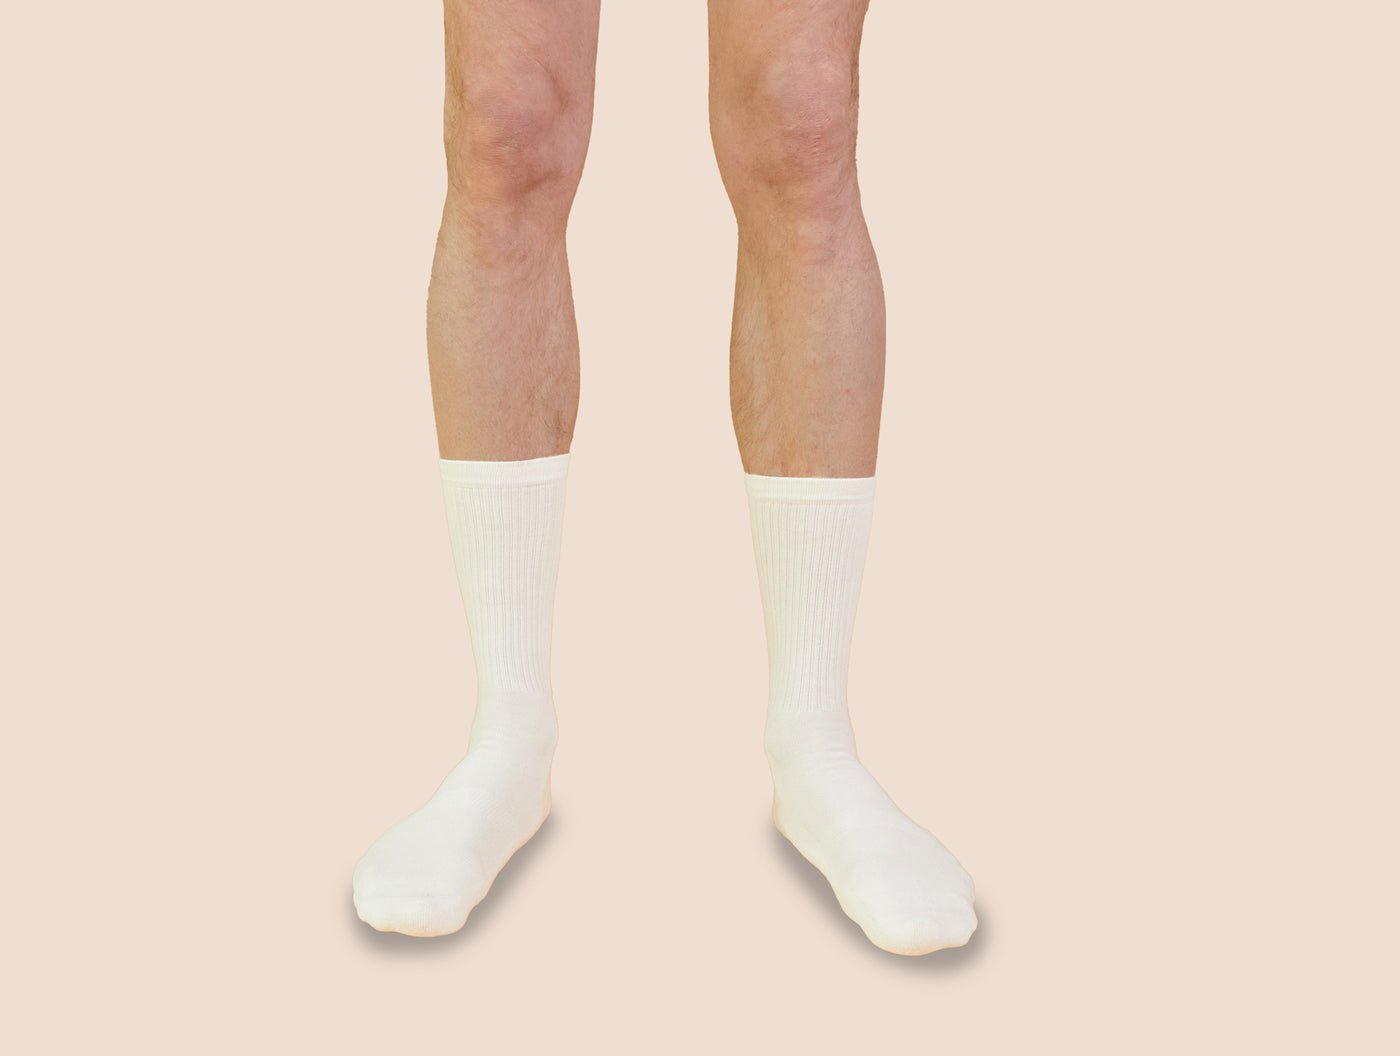 Petrone-chaussettes-tennis-coton-bio-unies-hautes-homme-blanc crème-portées#couleur_blanc crème